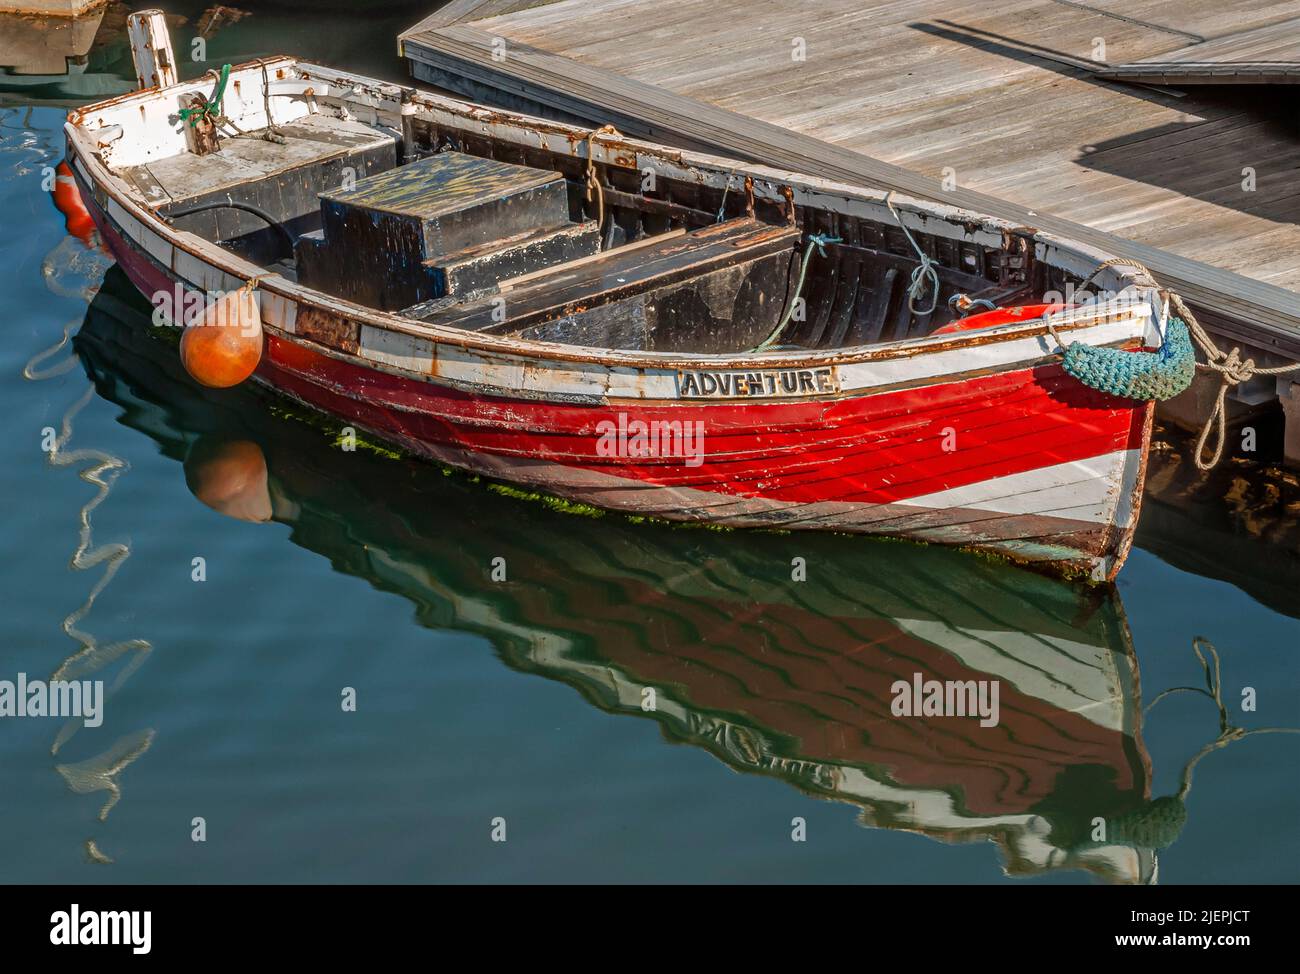 Pequeño barco de pesca rojo, llamado 'Adventure' en el puerto de Scarborough, North Yorkshire, Inglaterra Foto de stock